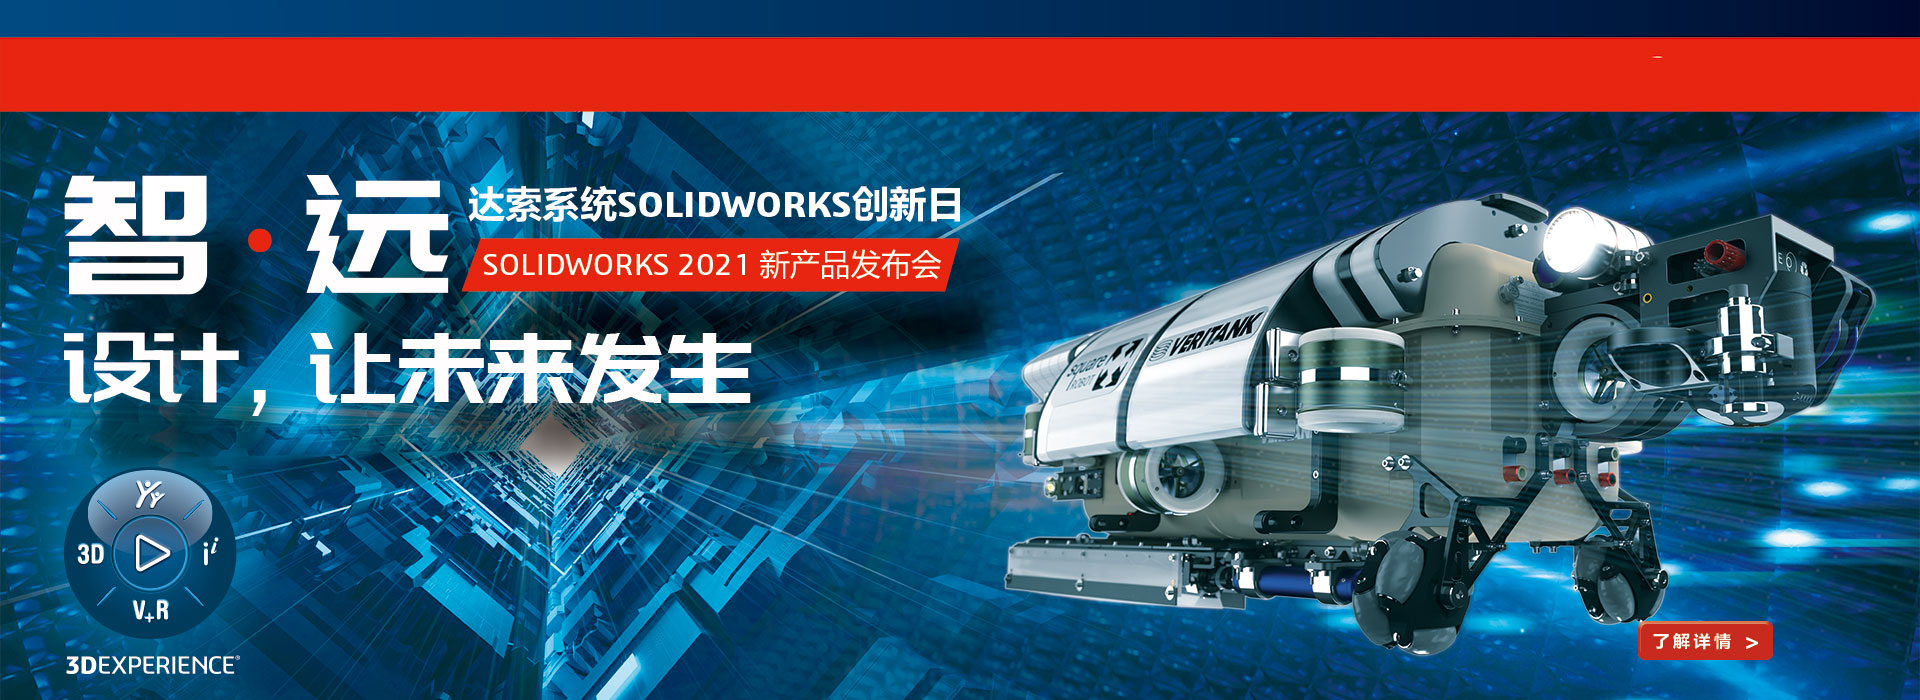 solidworks2021新产品发布会，报名获取新功能